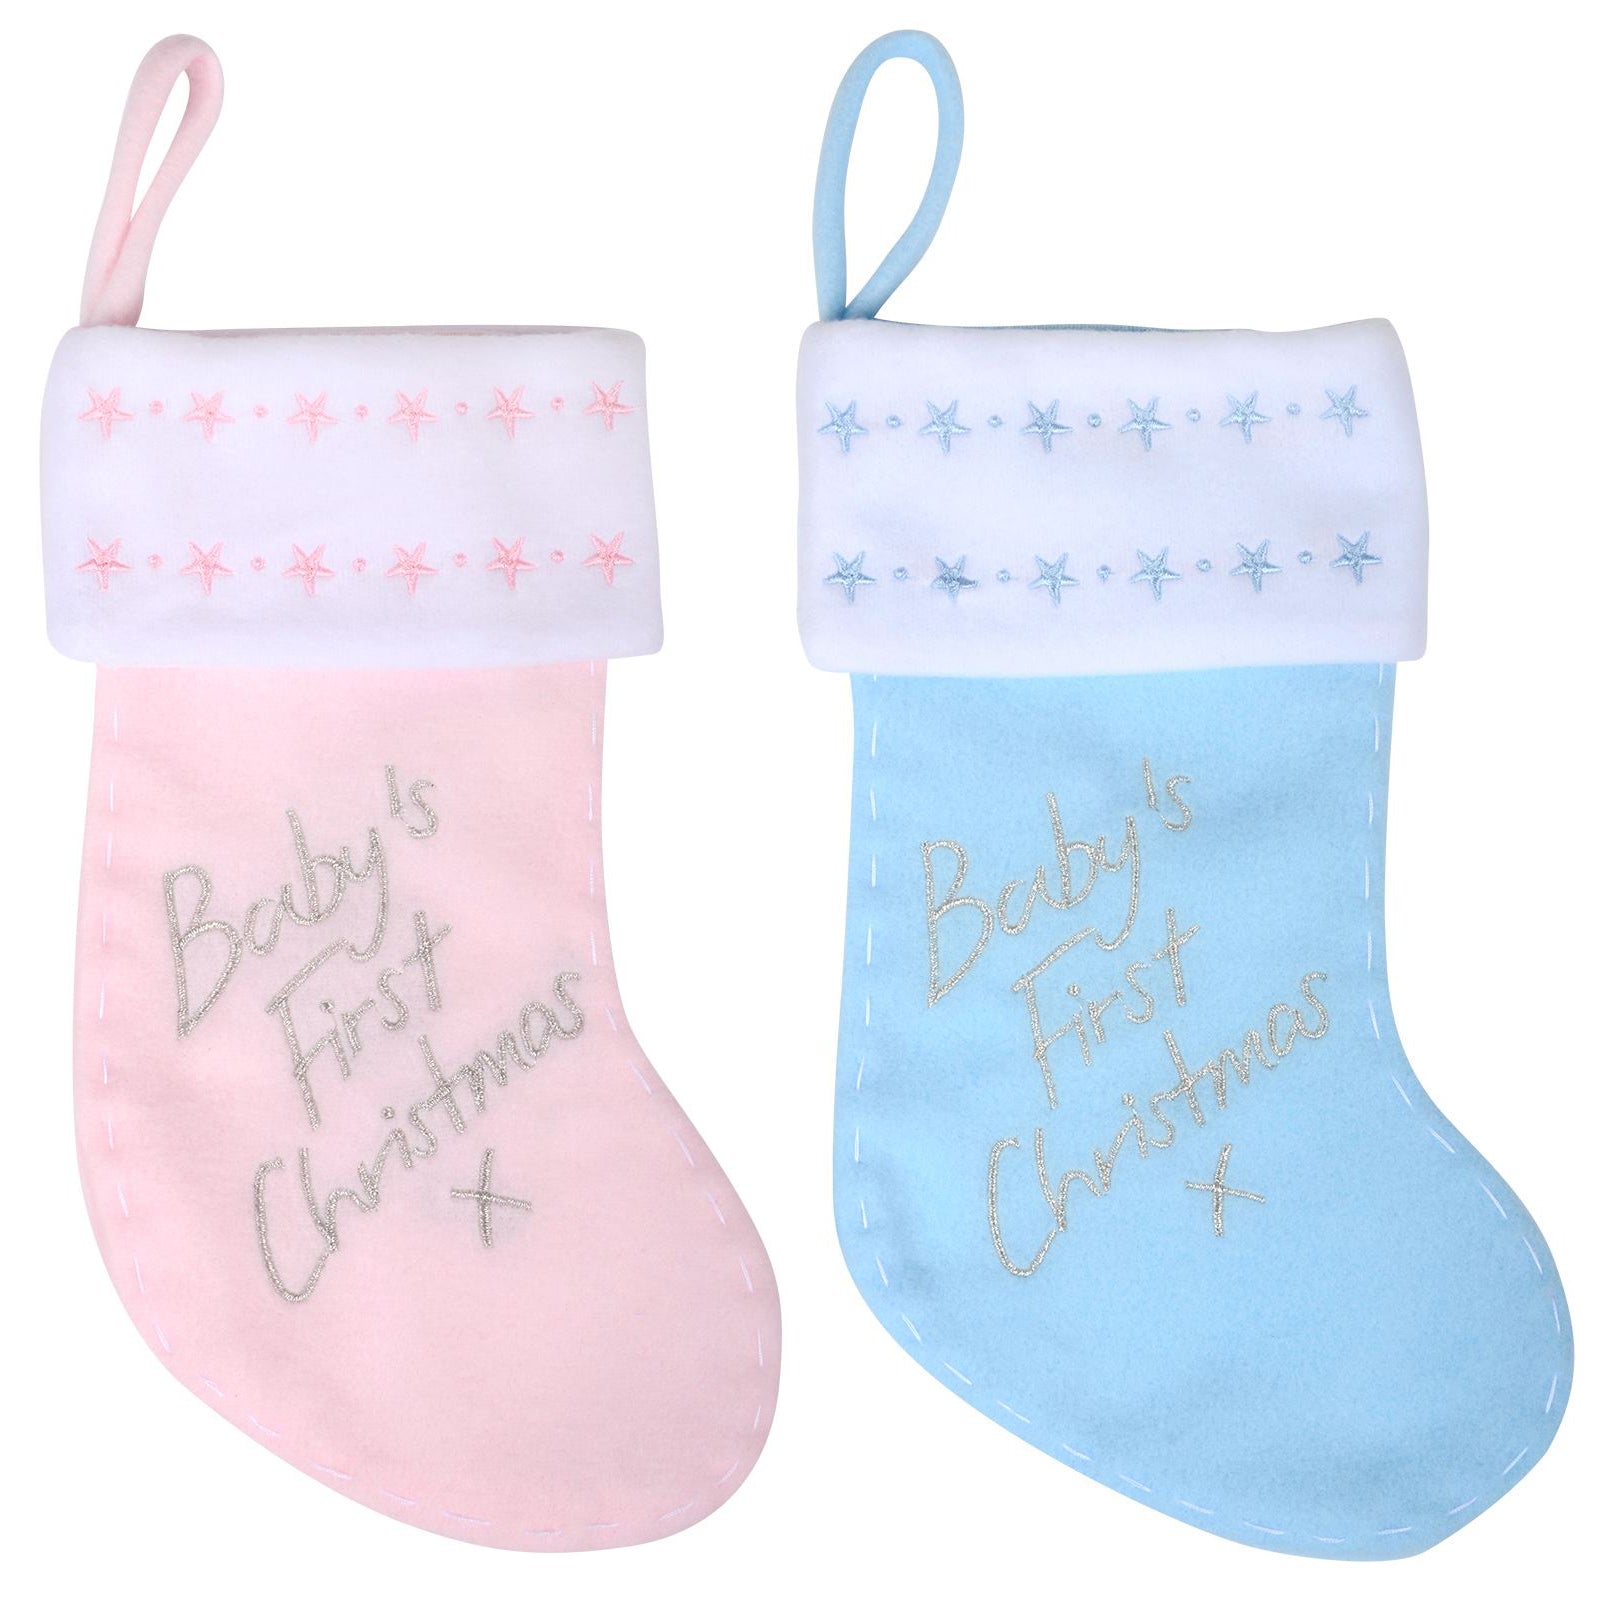 Mr Crimbo Babys 1st Christmas Stocking 12" Pink Blue Stars - MrCrimbo.co.uk -XS3700 - Blue -baby